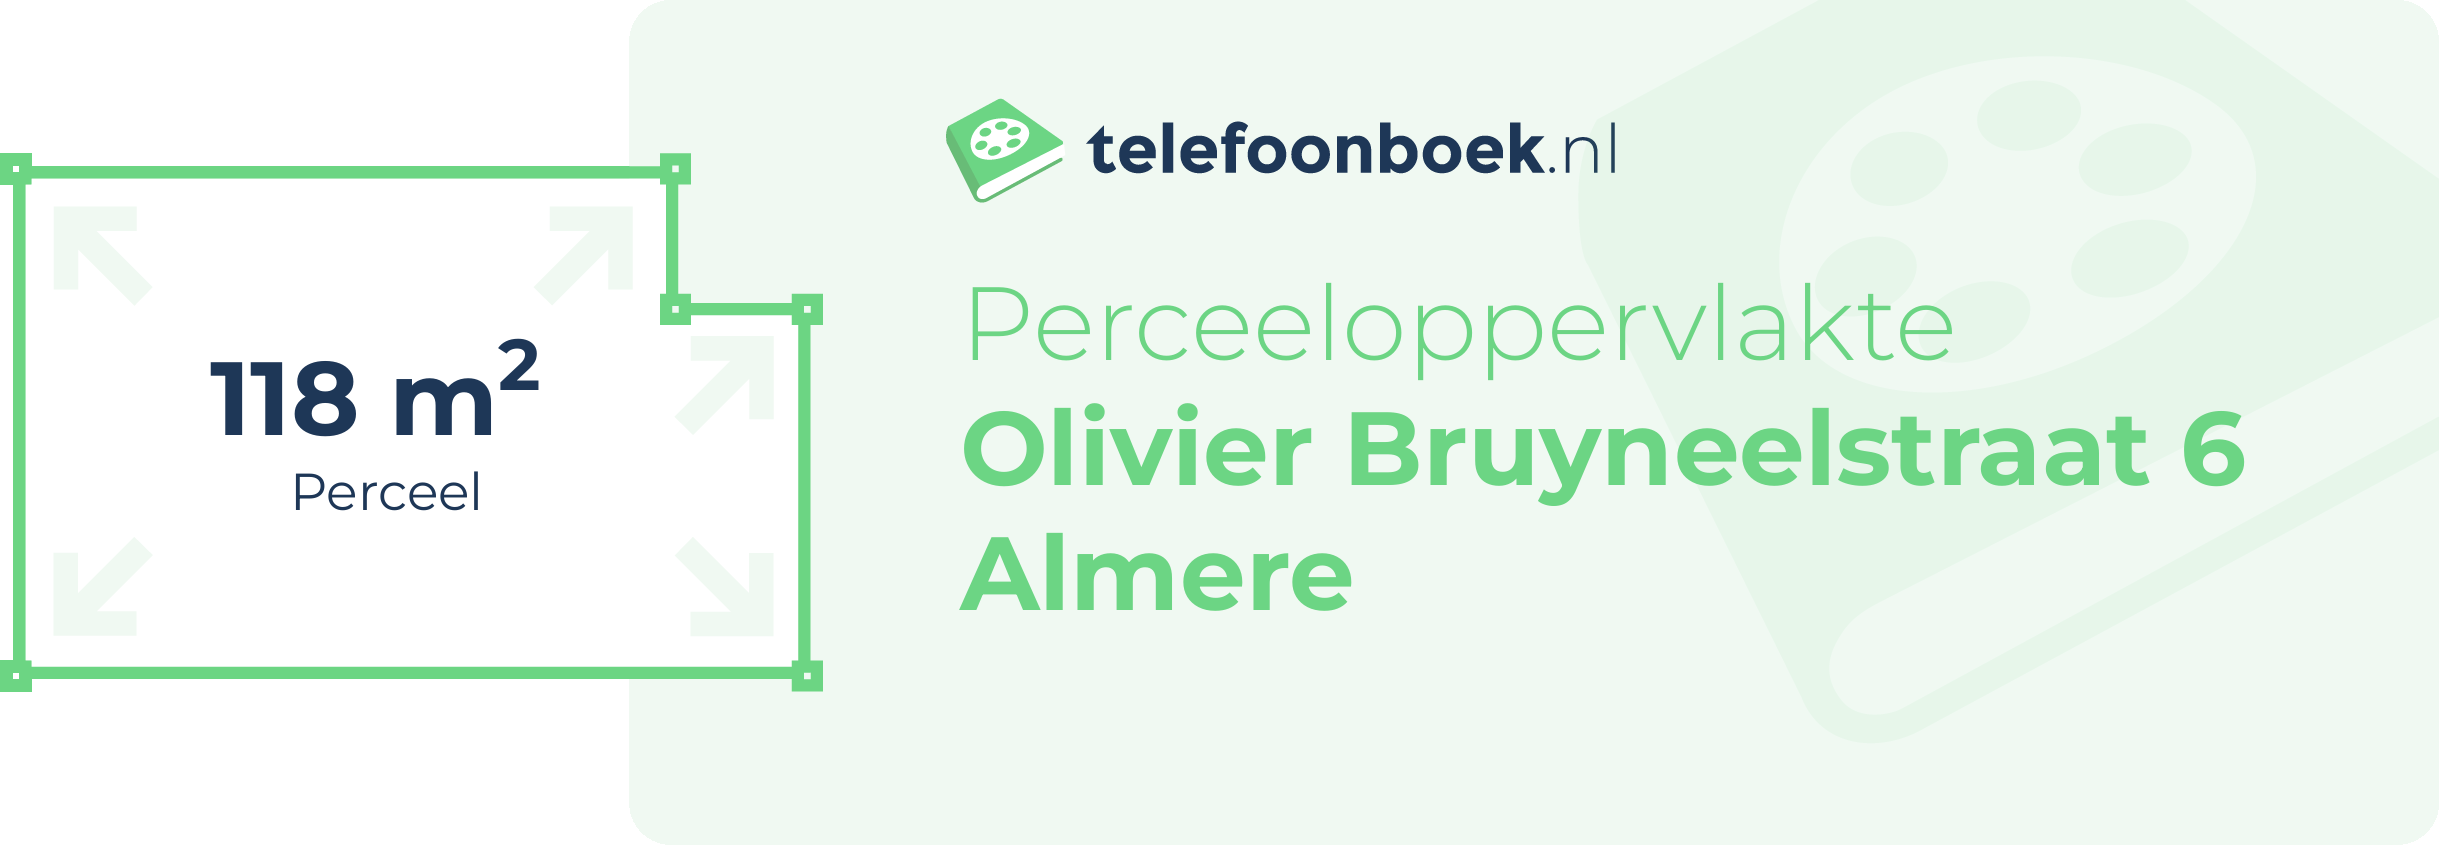 Perceeloppervlakte Olivier Bruyneelstraat 6 Almere